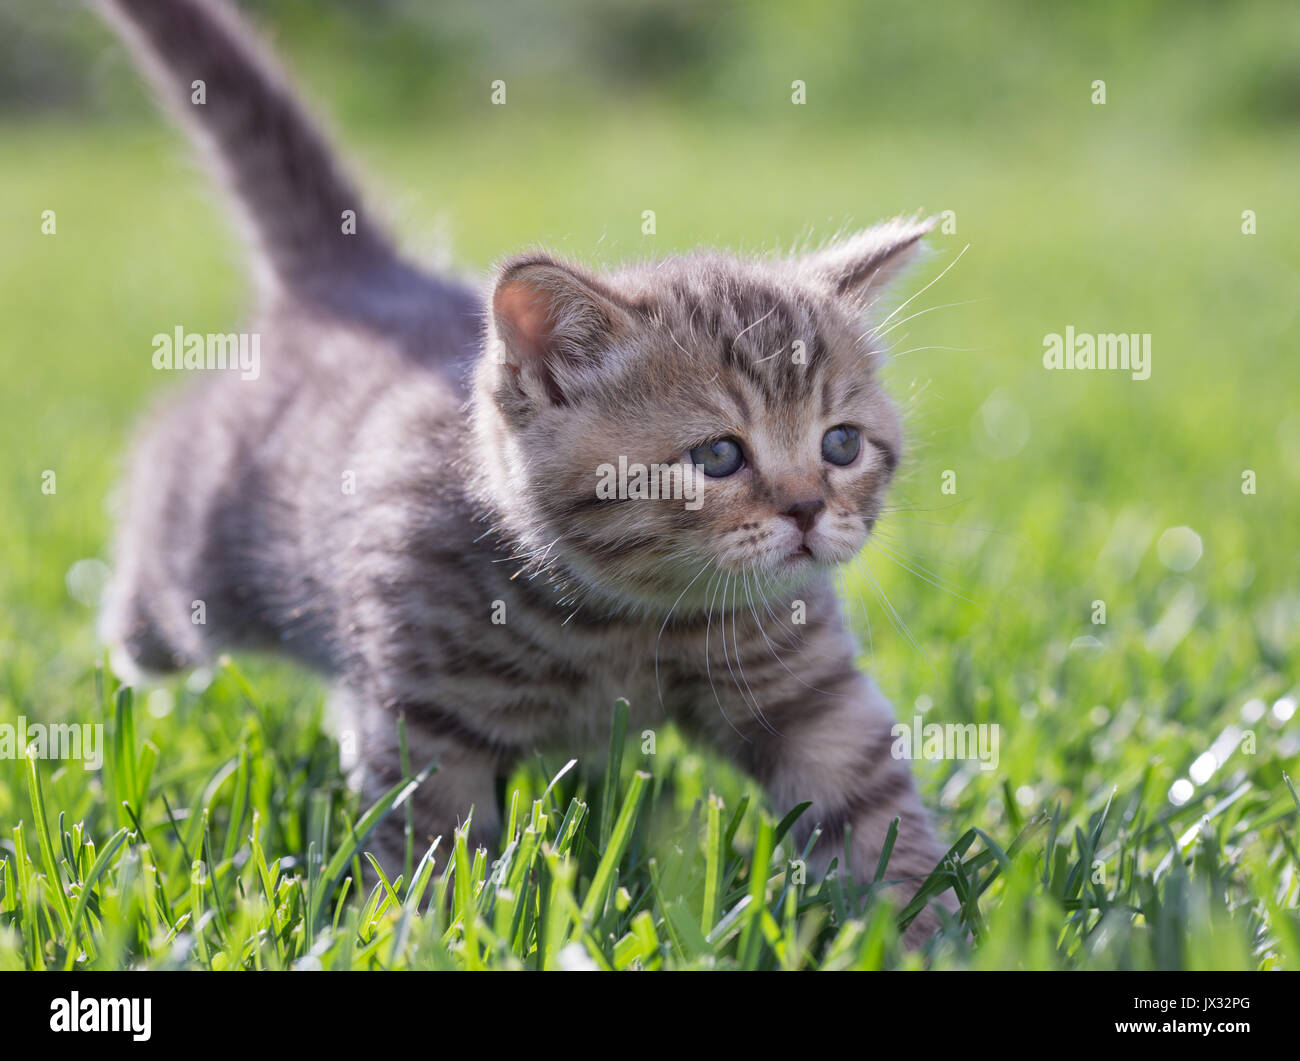 Giovani cat passeggiate nel verde erba outdoor Foto Stock